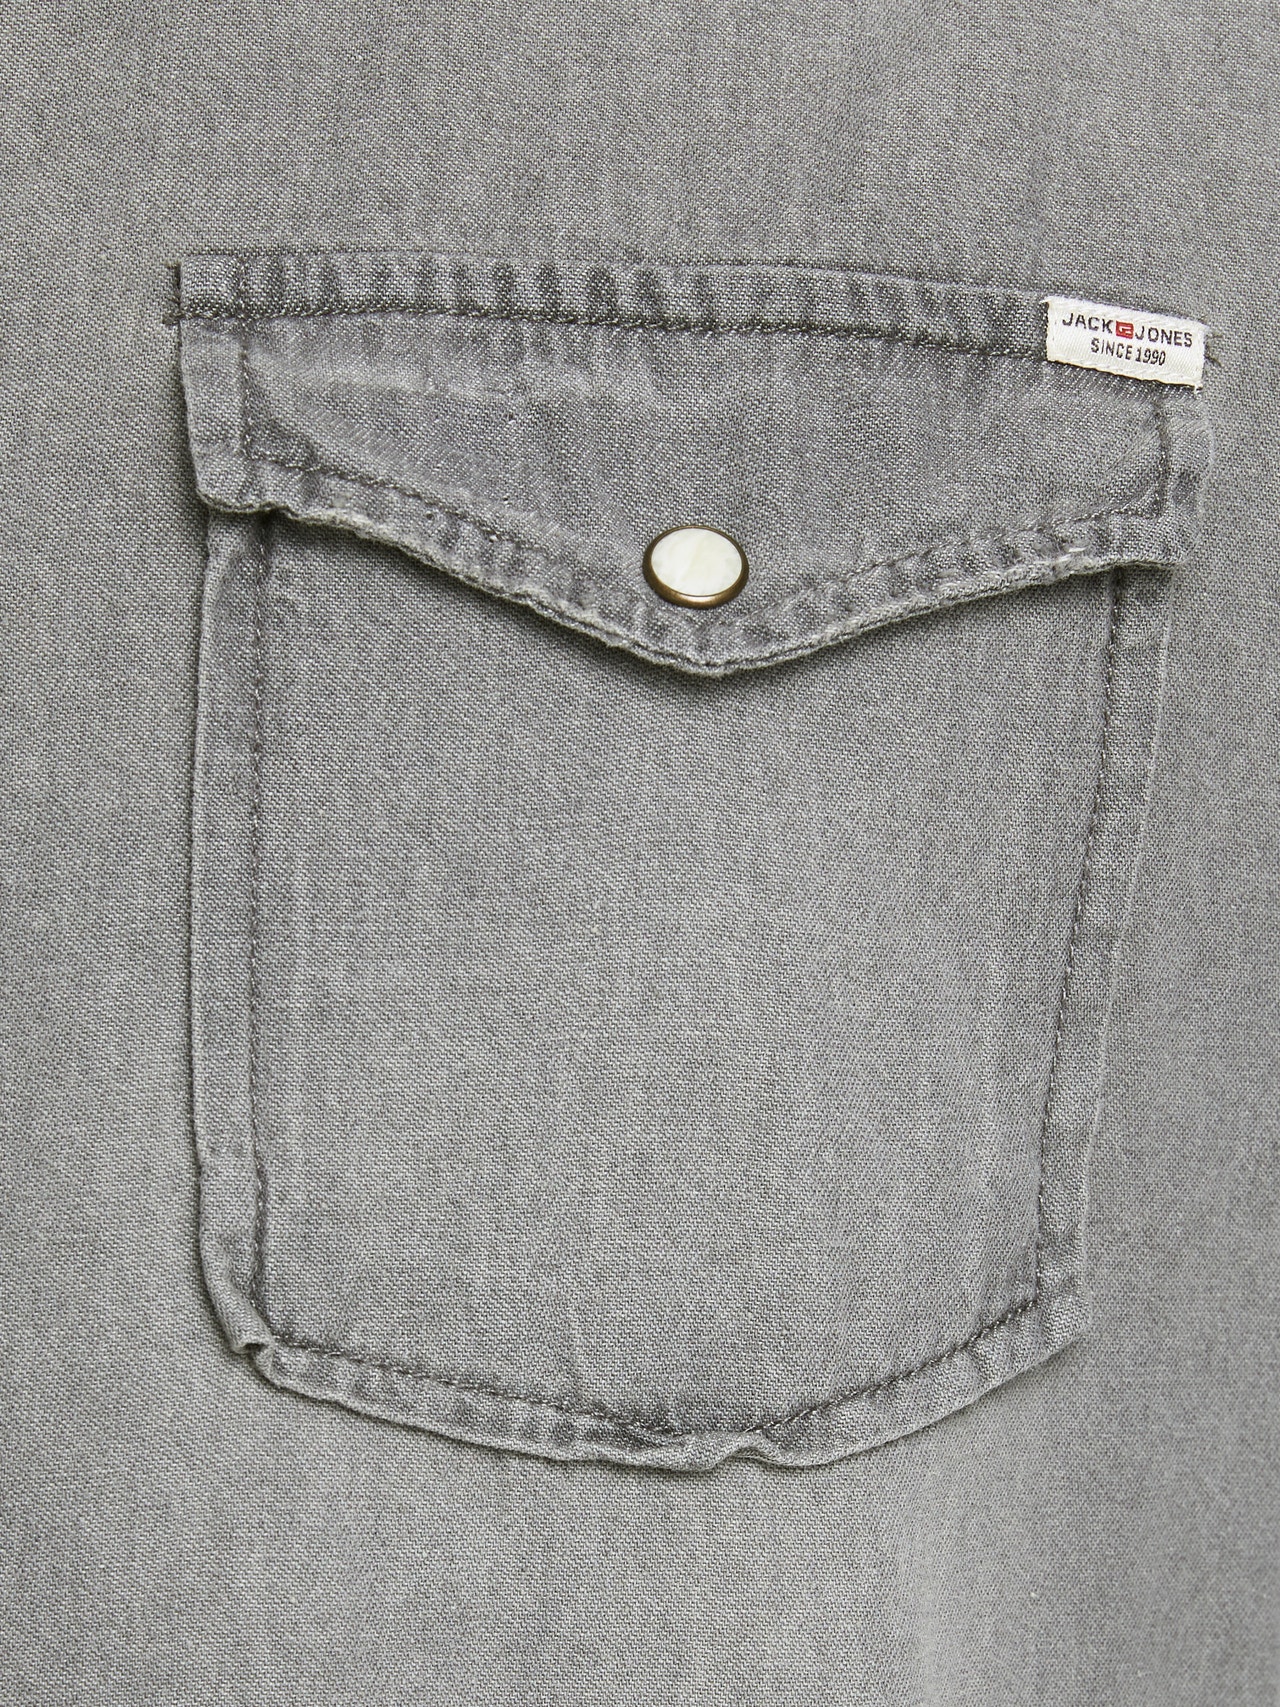 Jack & Jones Slim Fit Džínová košile -Light Grey Denim - 12138115